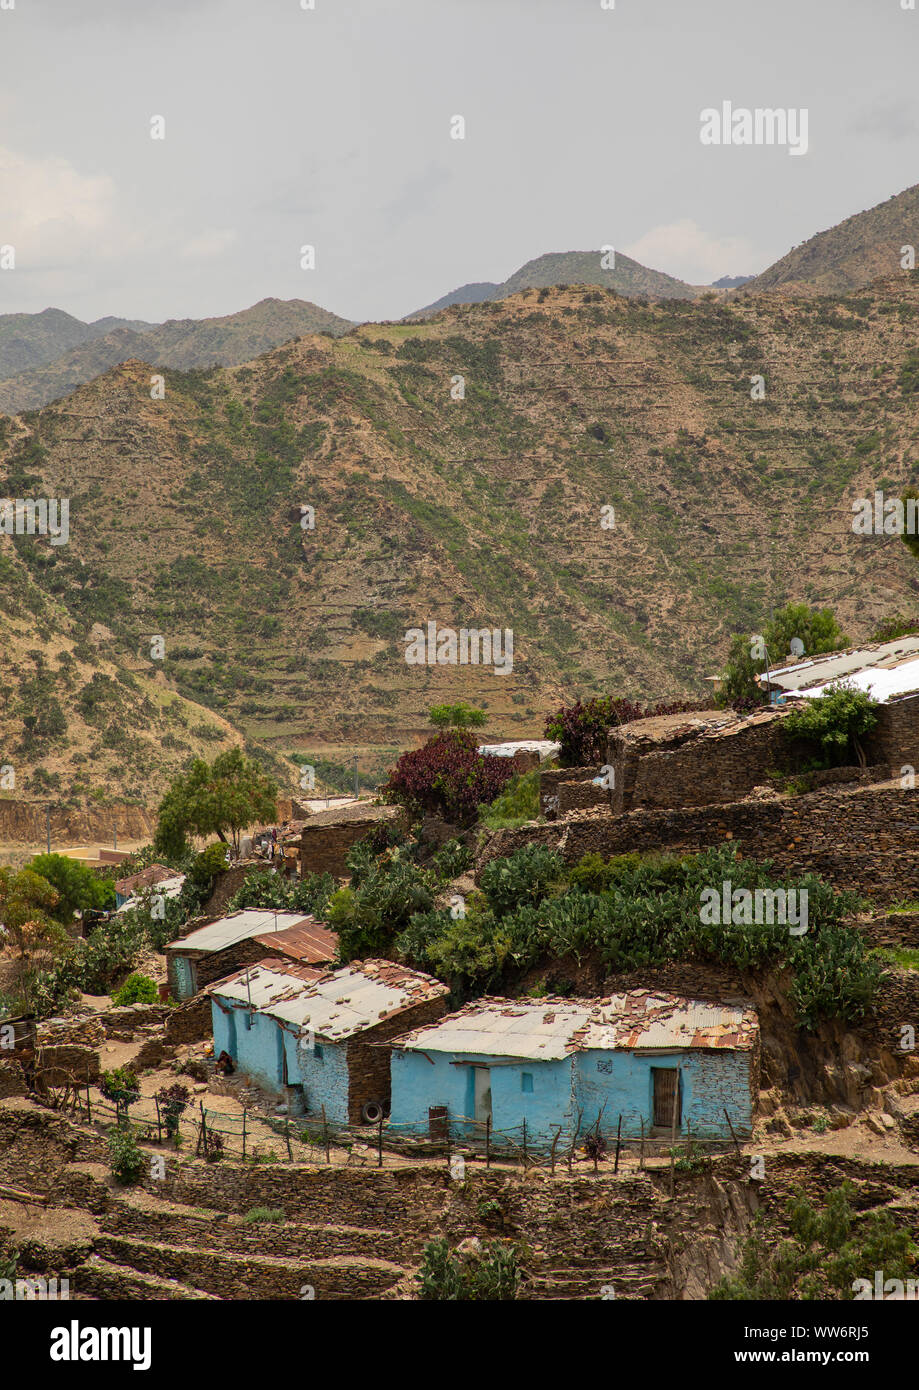 Villaggio nelle highlands montagne, regione centrale di Asmara Eritrea Foto Stock